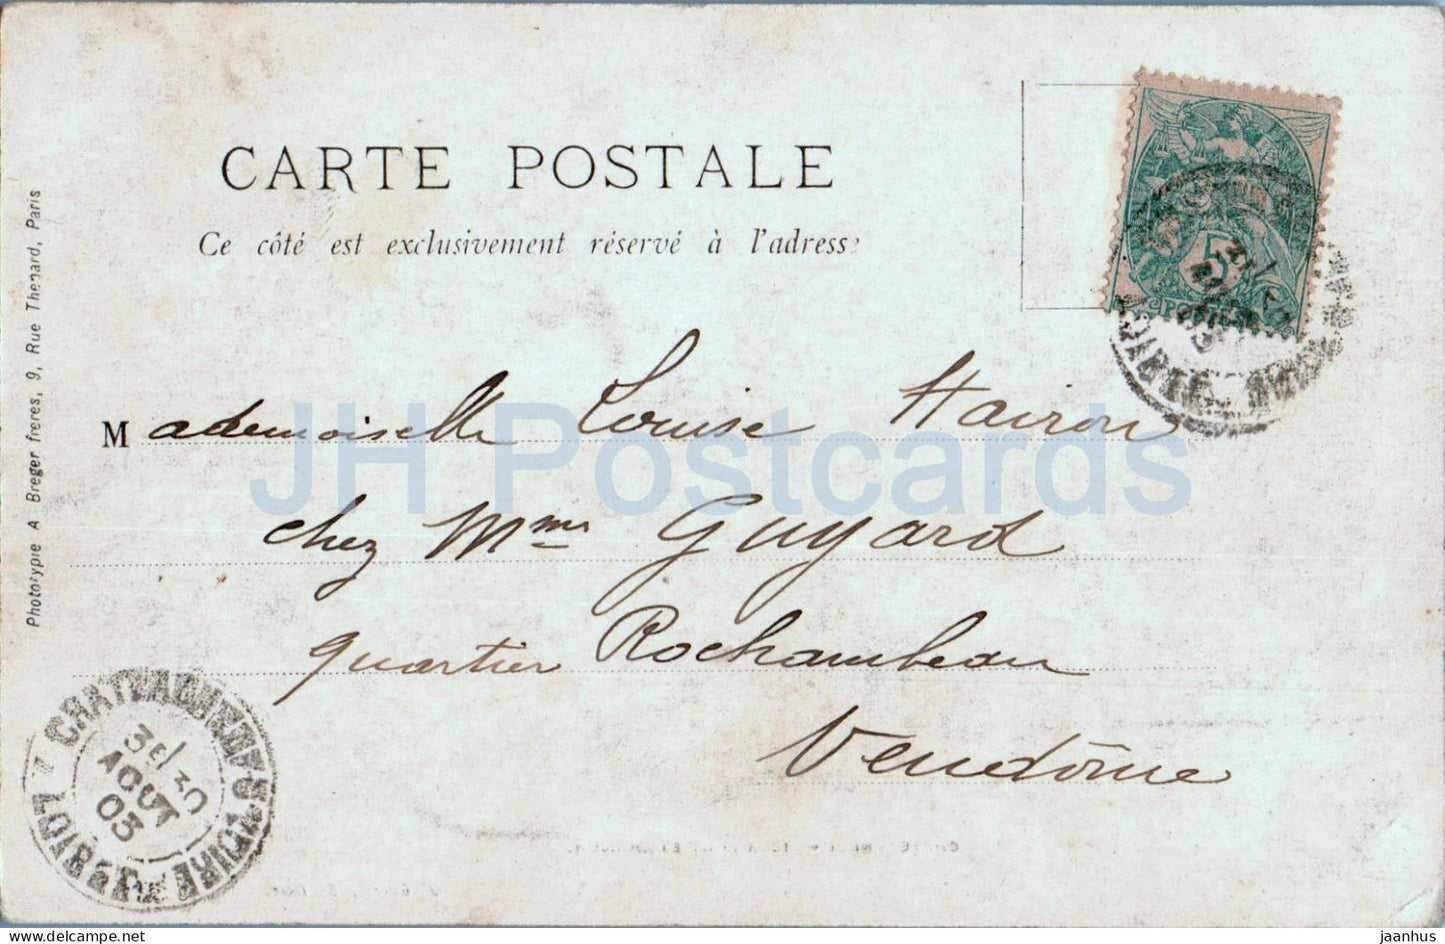 Chateauneuf - Vieux Pont et Donjon - carte postale ancienne - 1903 - France - occasion 